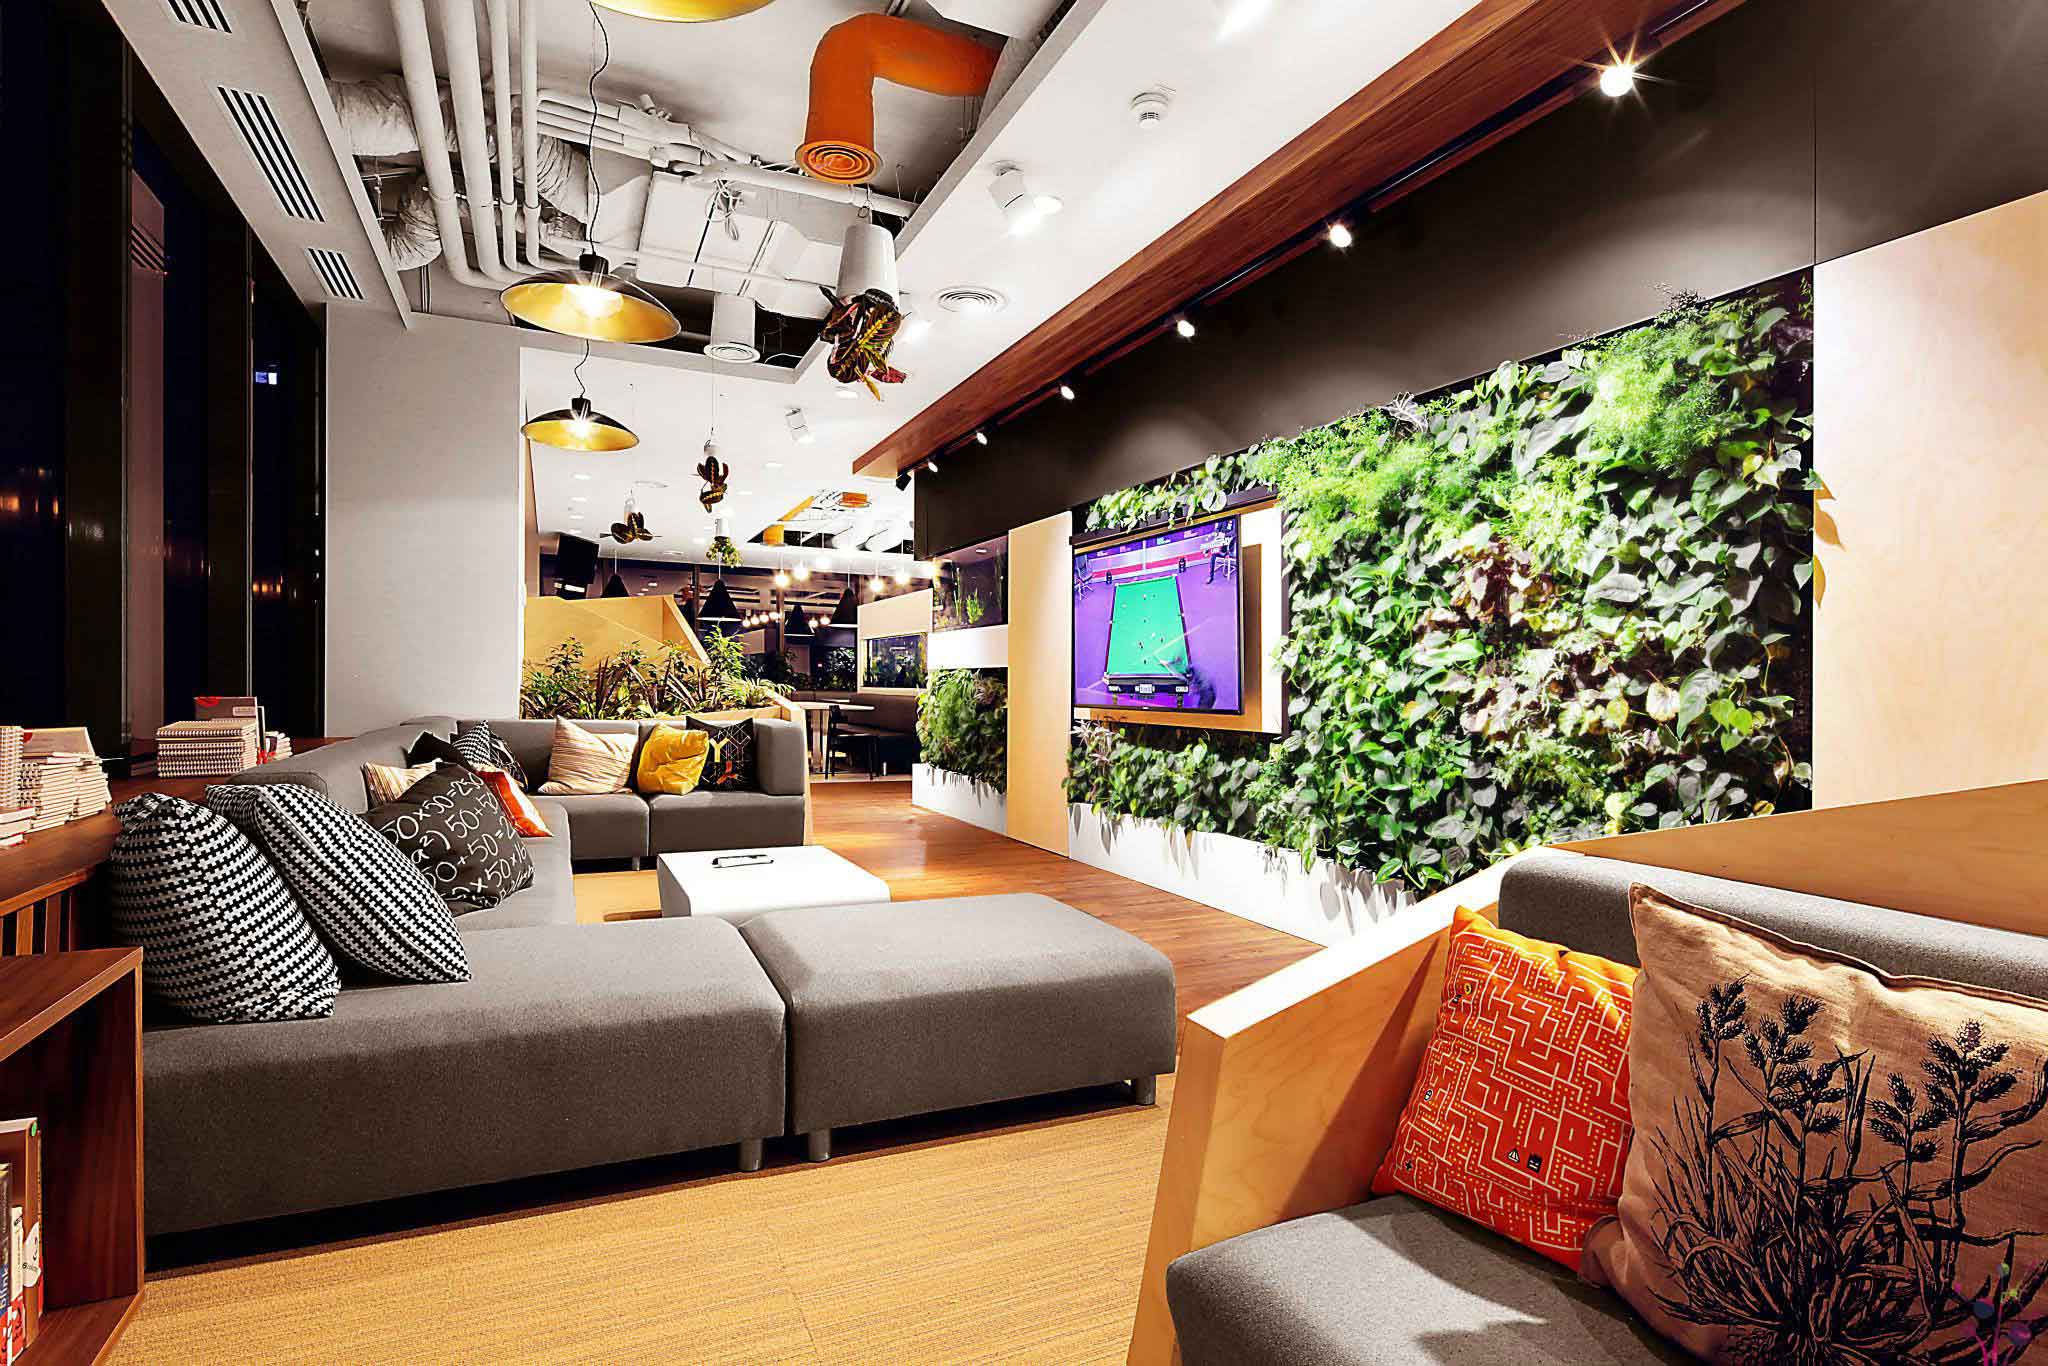 Nowoczesny salon biurowy z szarymi sofami, kolorowymi poduszkami, dużą zieloną żywą ścianą i stylowymi lampami wiszącymi.